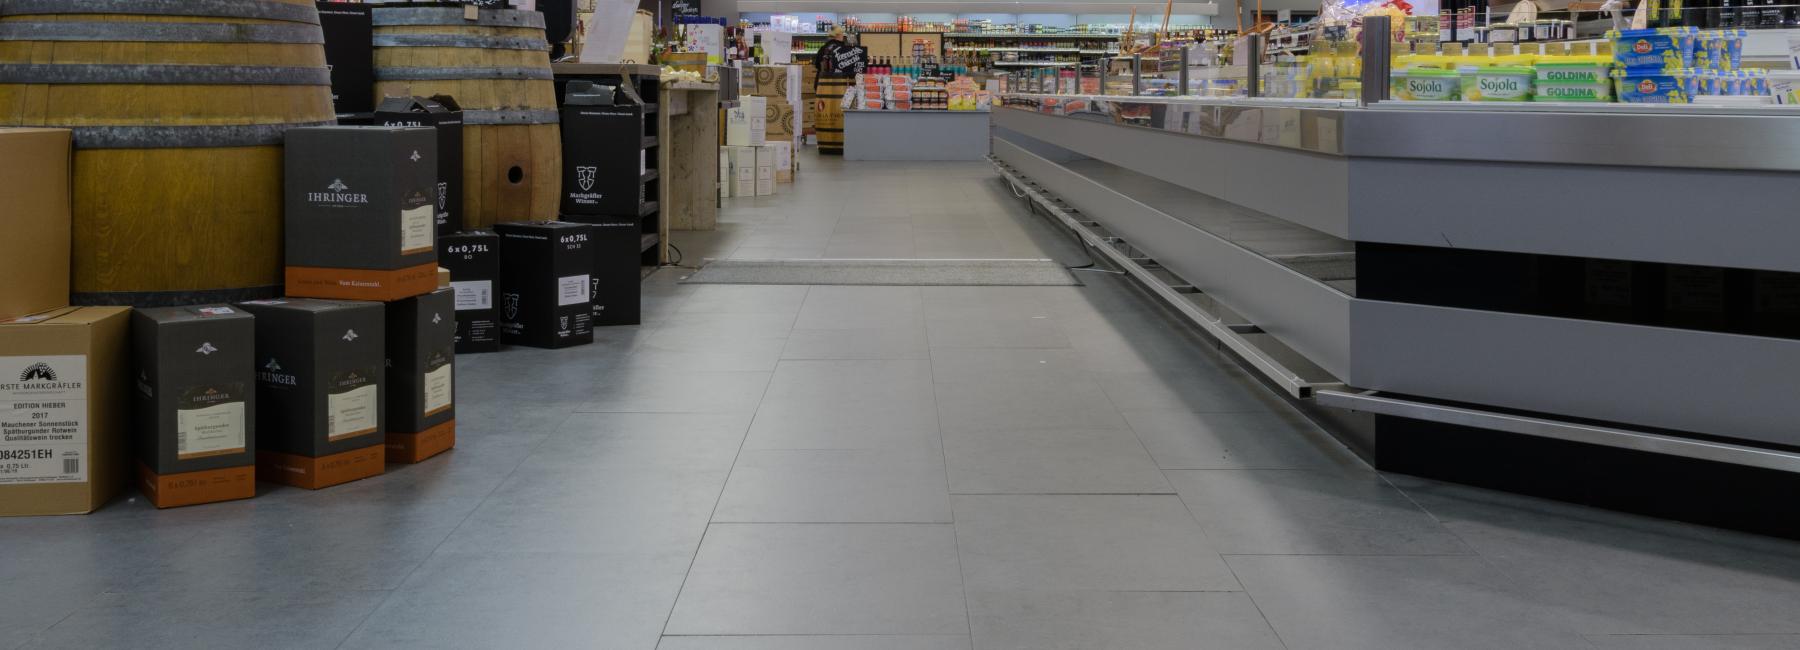 Supermarkt_Vorher